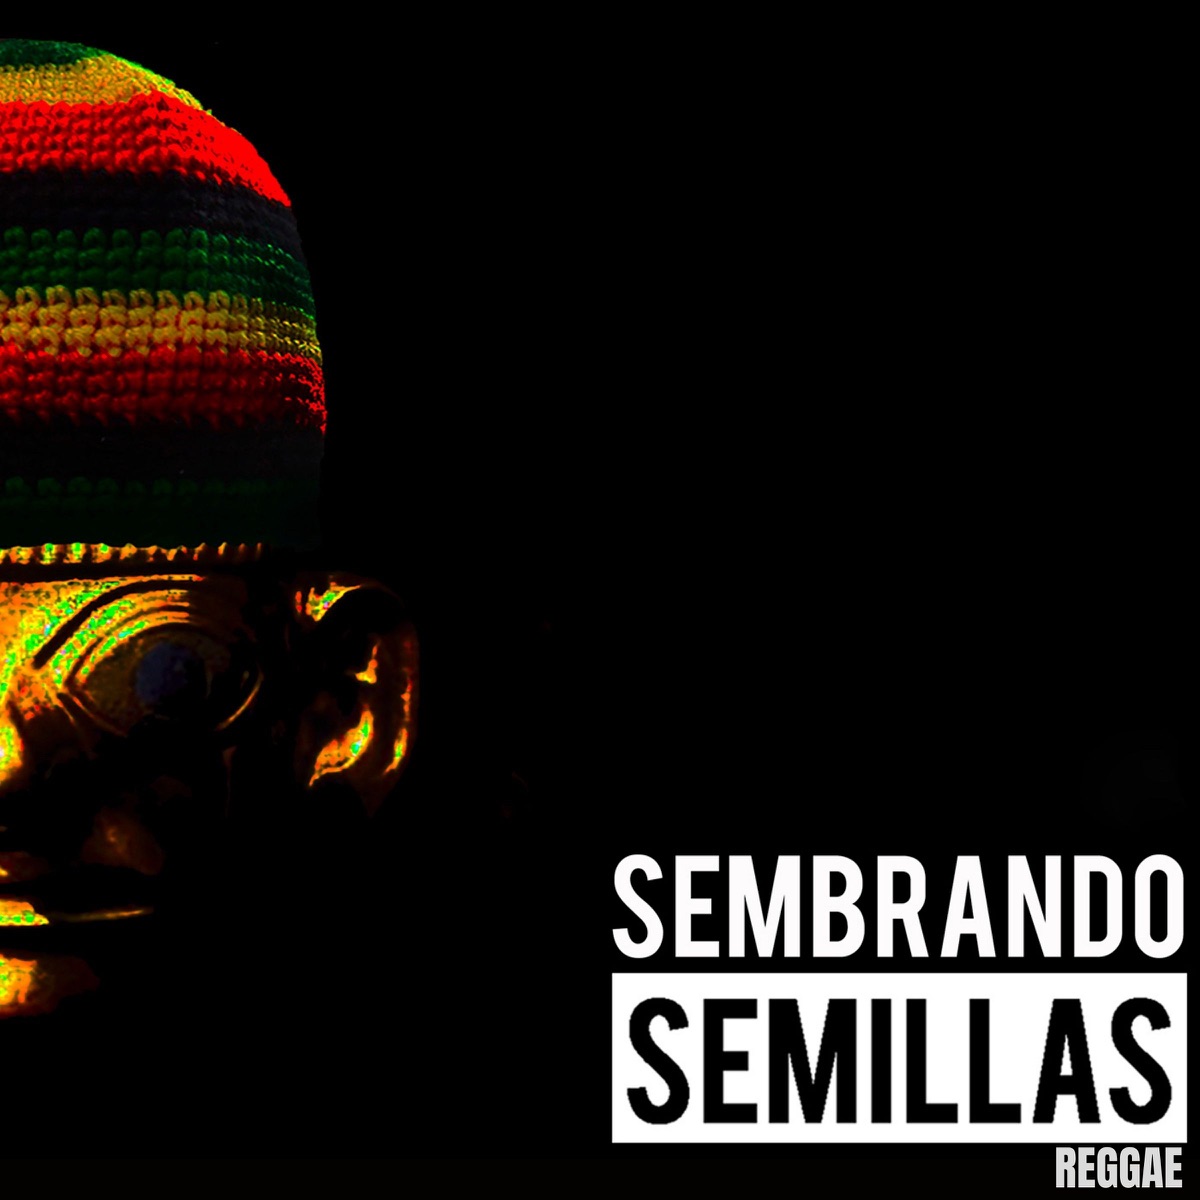 Argucias - Single - Album by Semillas Reggae - Apple Music